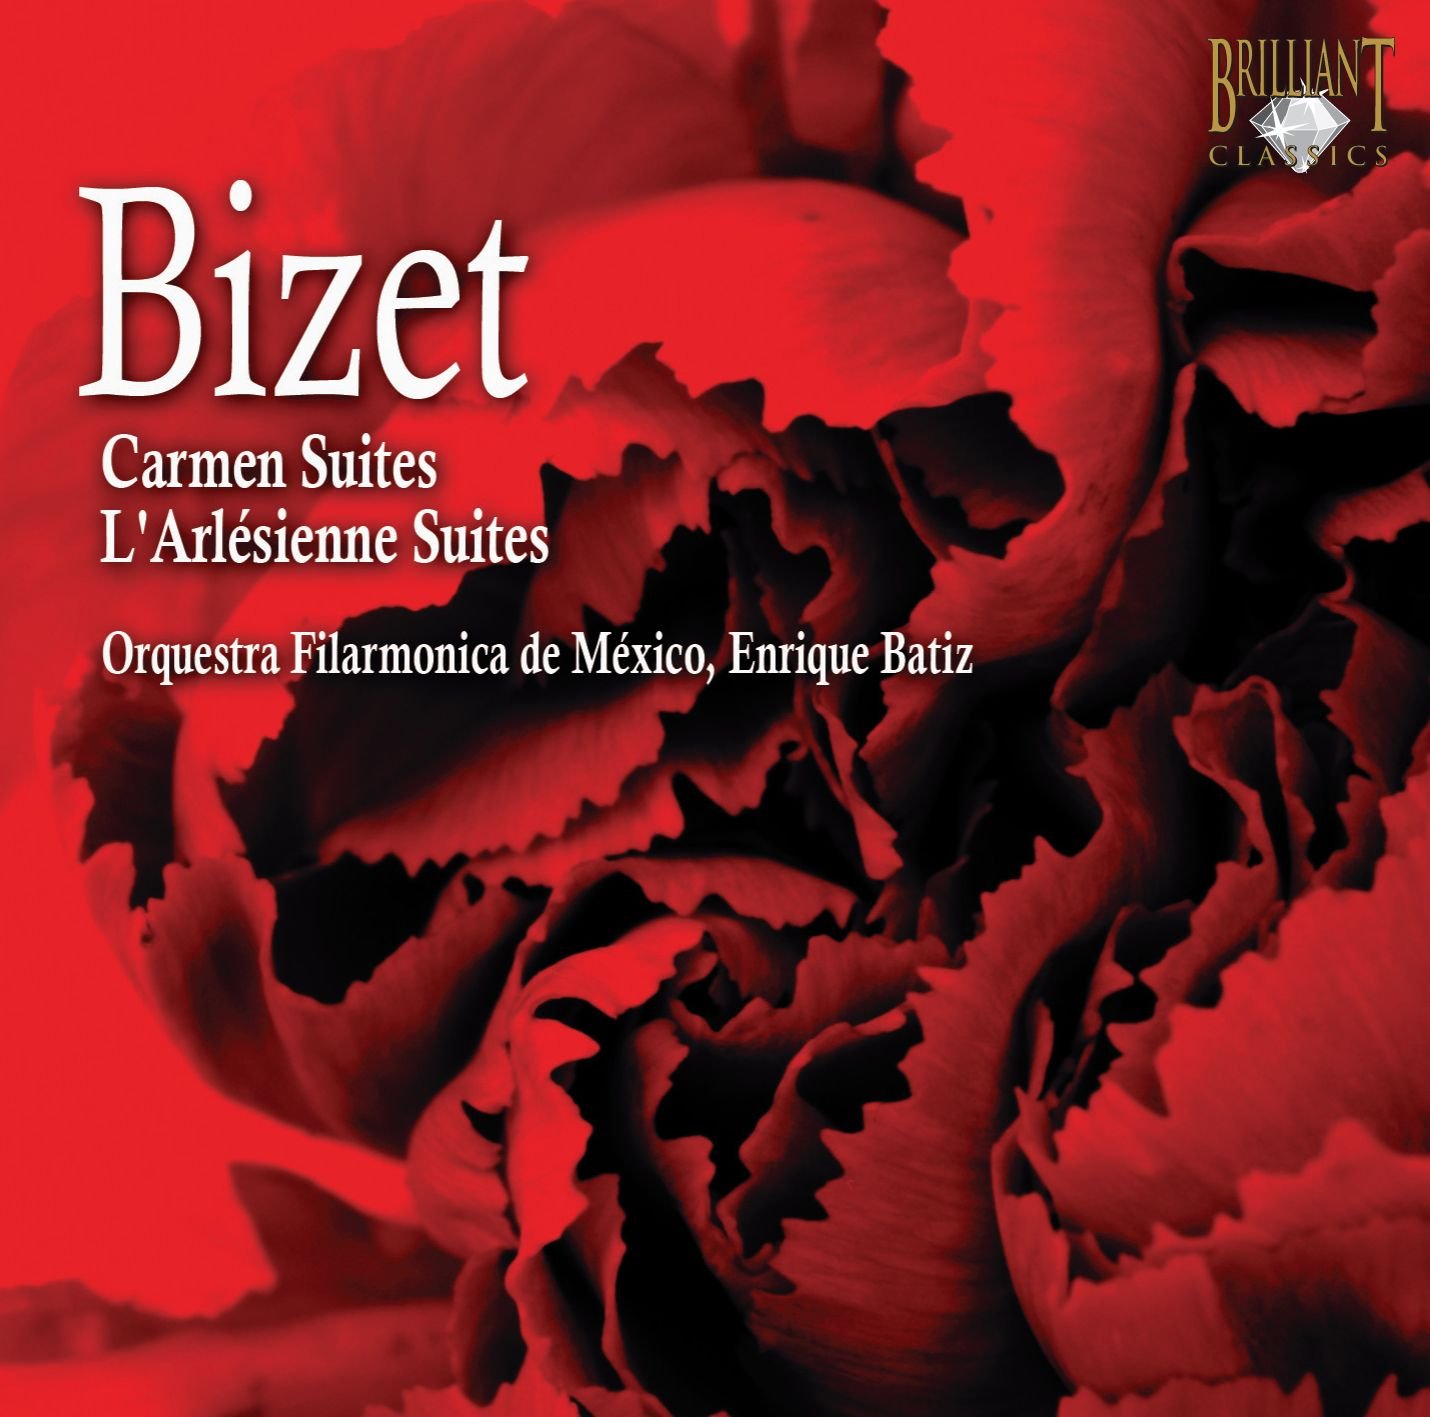 CD Bizet - Carmen suites, Larlesienne suites - Orquestra Filarmonica de Mexico - Enrique Batiz